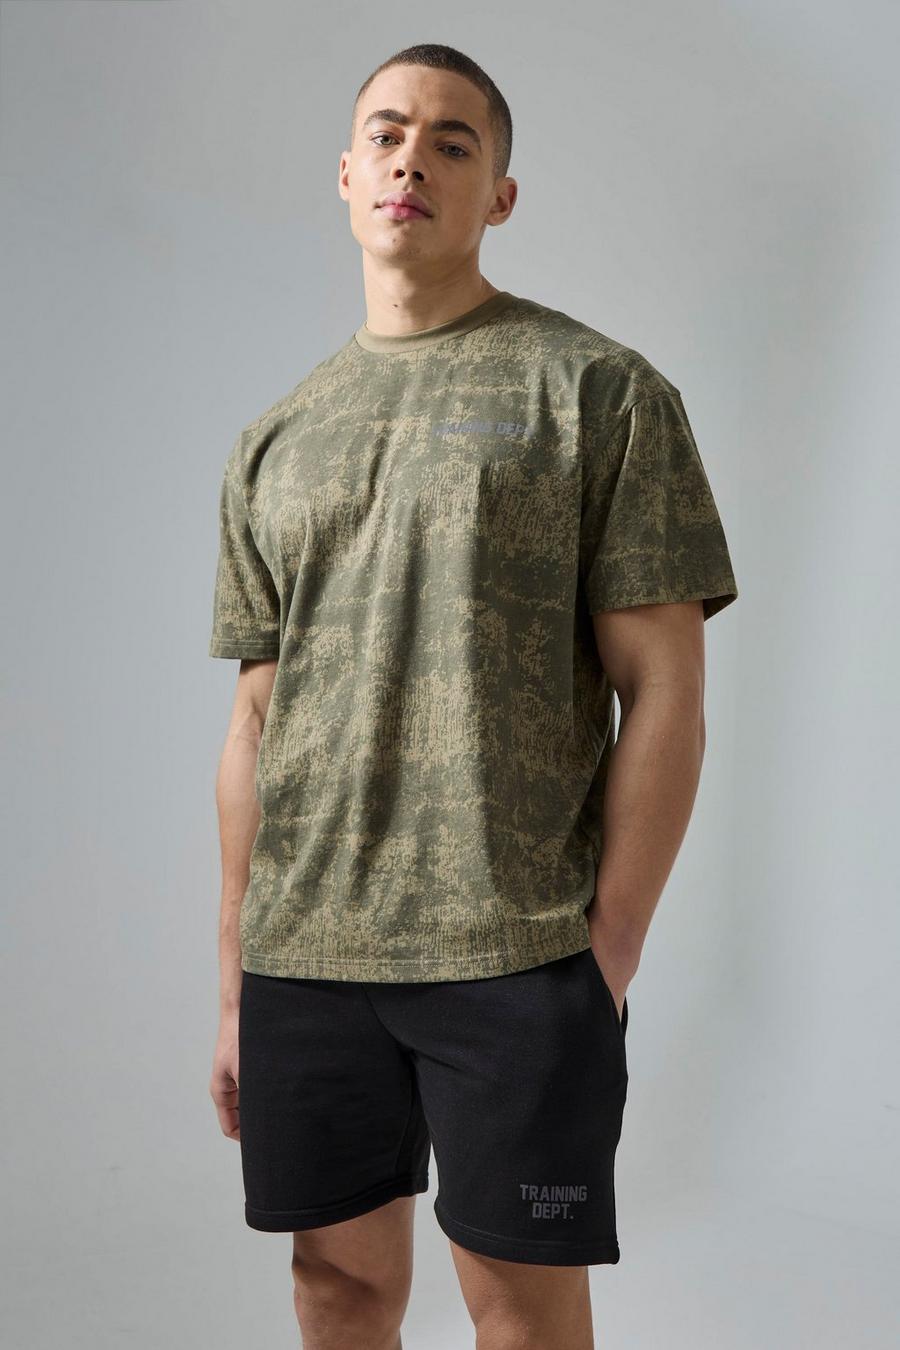 Active Training Dept Camouflage T-Shirt & Shorts, Khaki